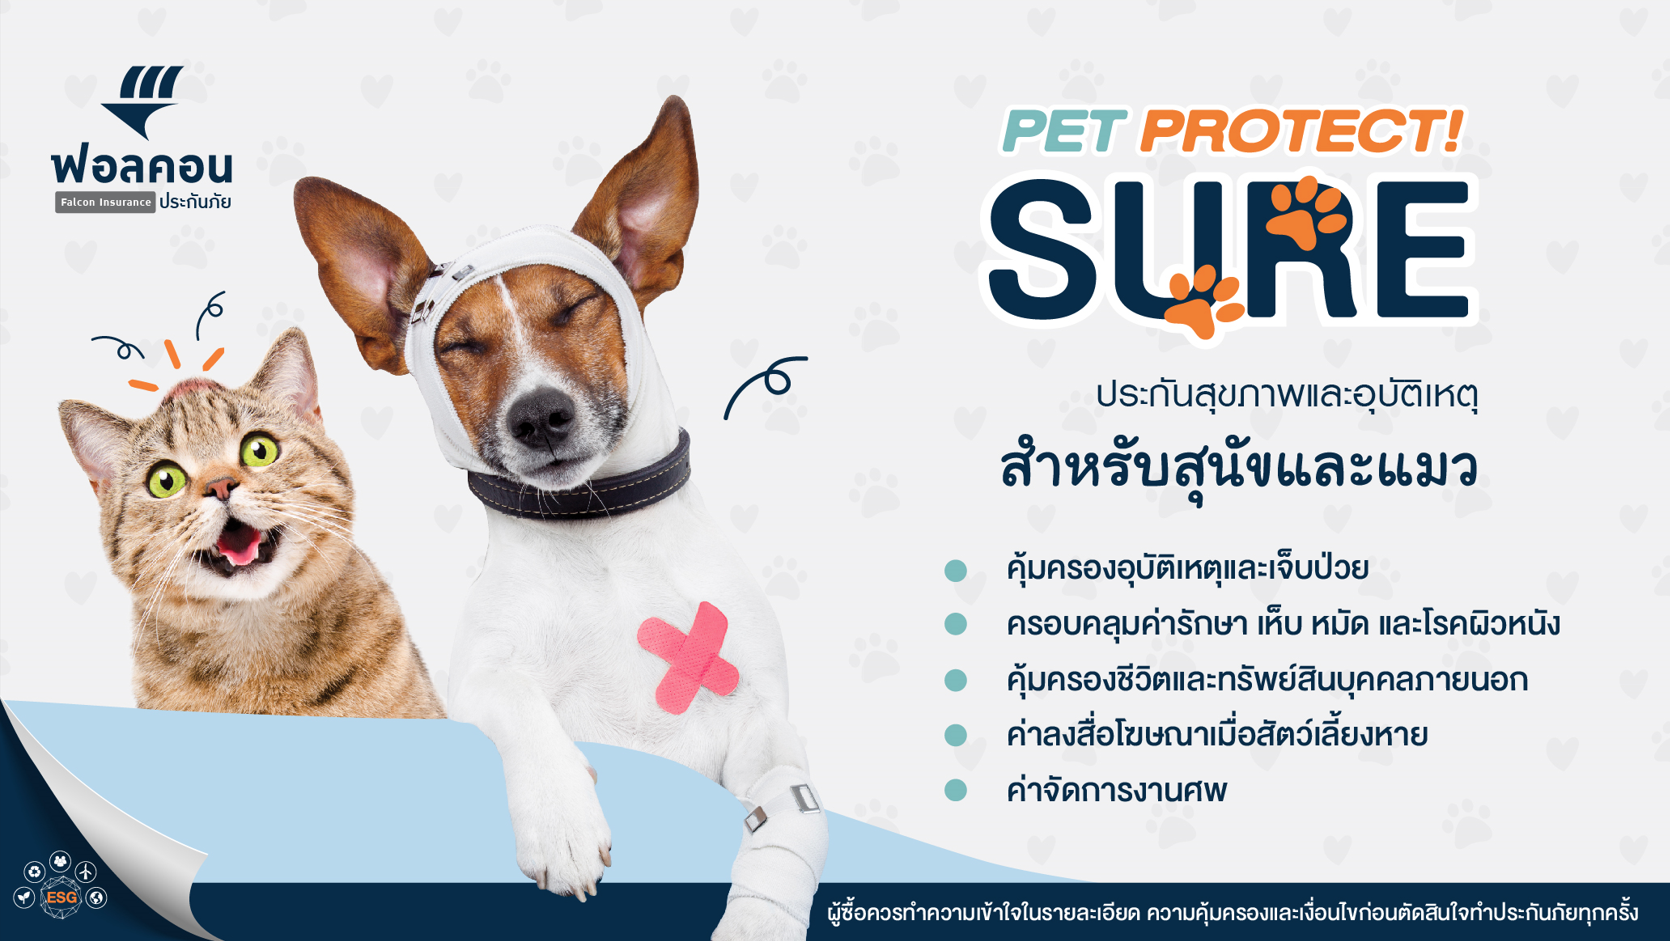 ประกันสุขภาพและอุบัติเหตุสำหรับสุนัขและแมว